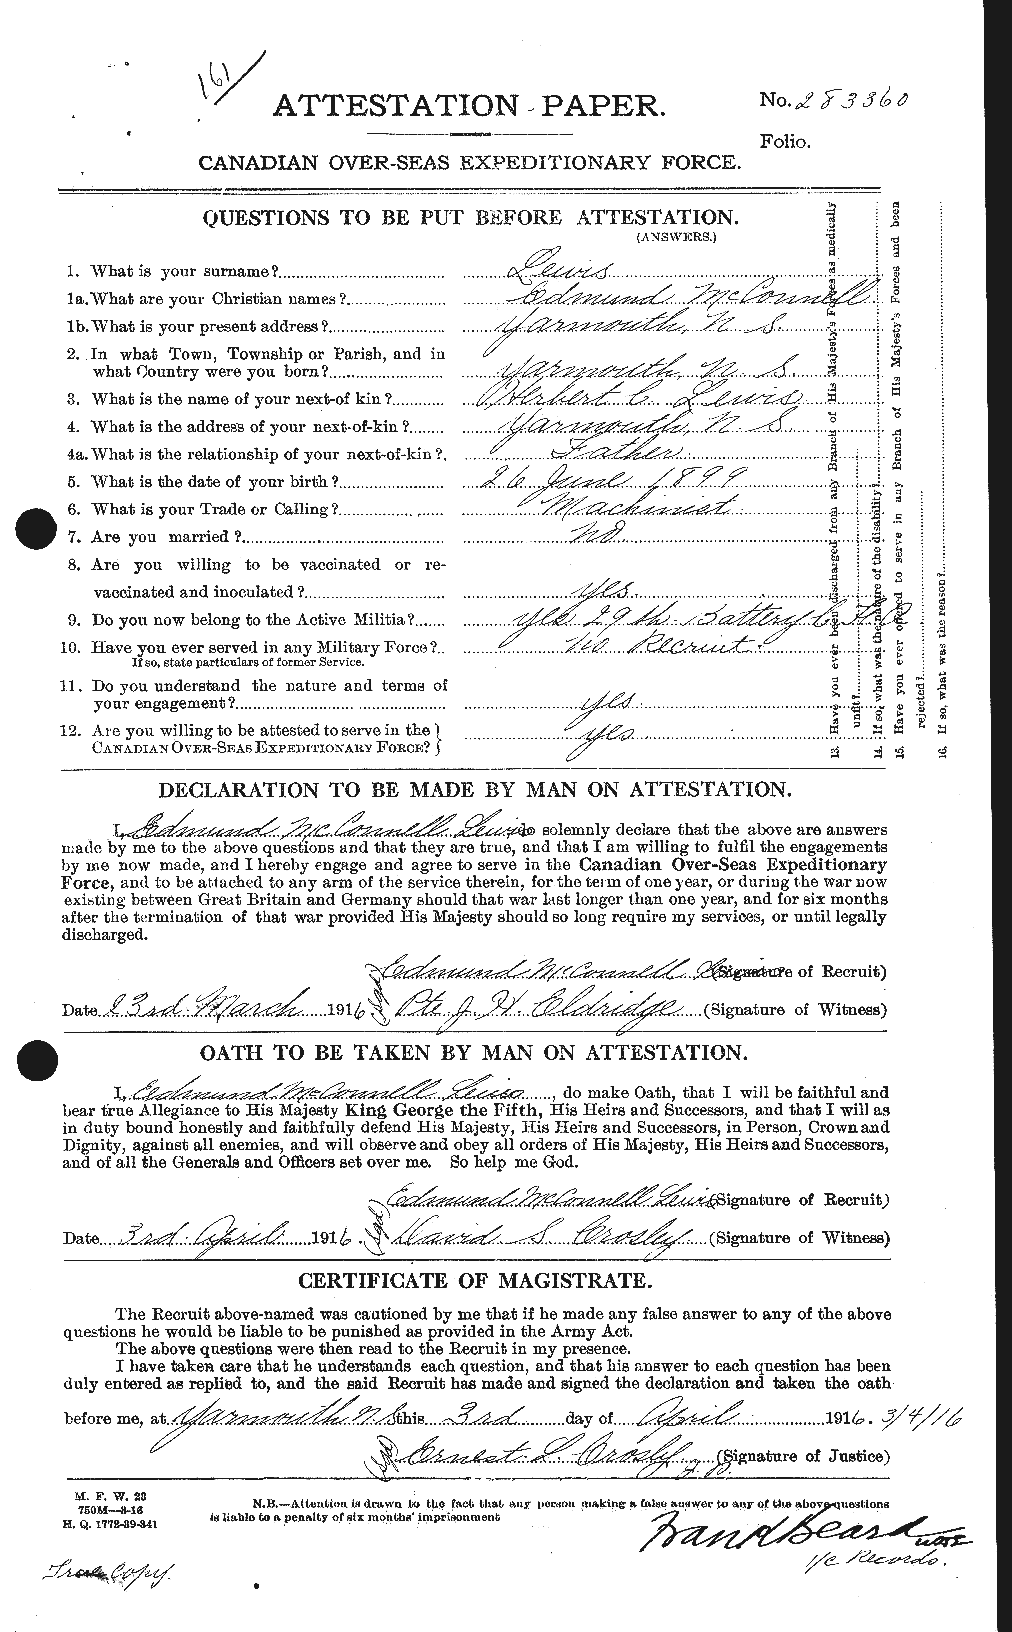 Dossiers du Personnel de la Première Guerre mondiale - CEC 464995a